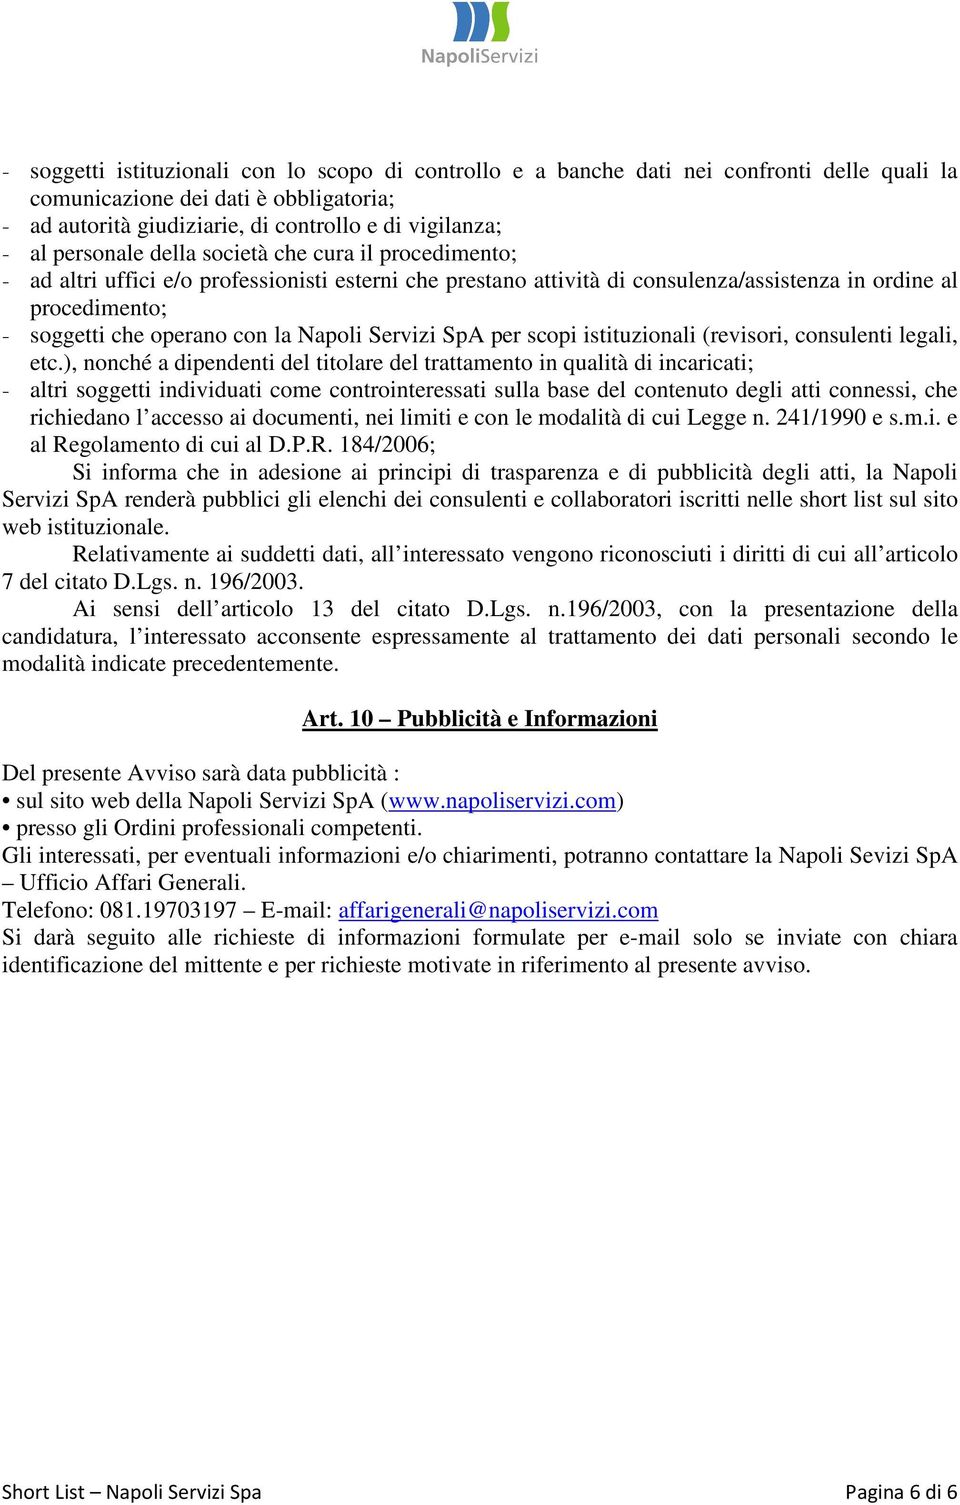 Napoli Servizi SpA per scopi istituzionali (revisori, consulenti legali, etc.